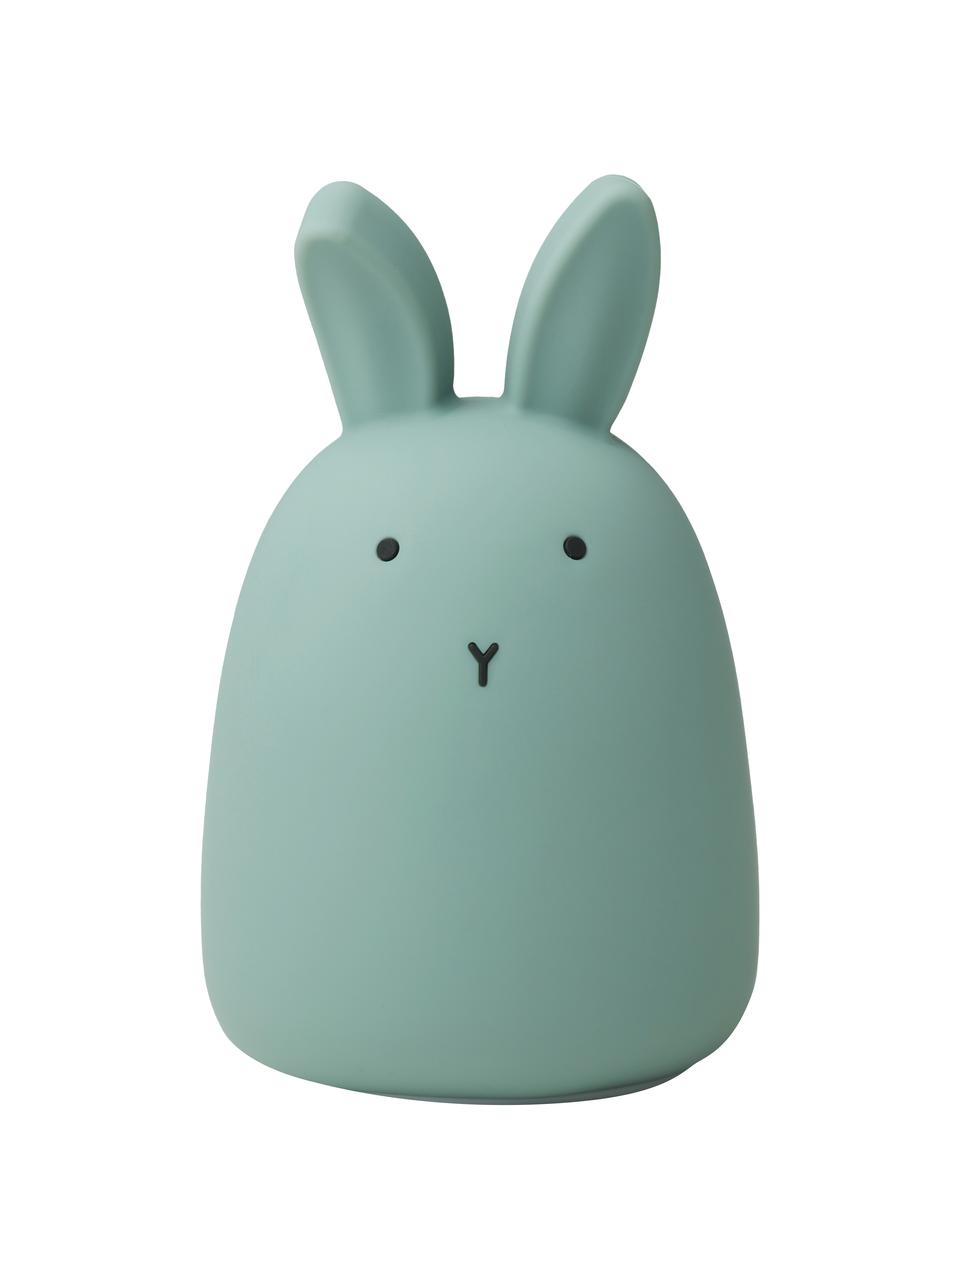 Lampa dekoracyjna LED Winston Rabbit, 100% silikon, Zielony, Ø 11 x W 14 cm